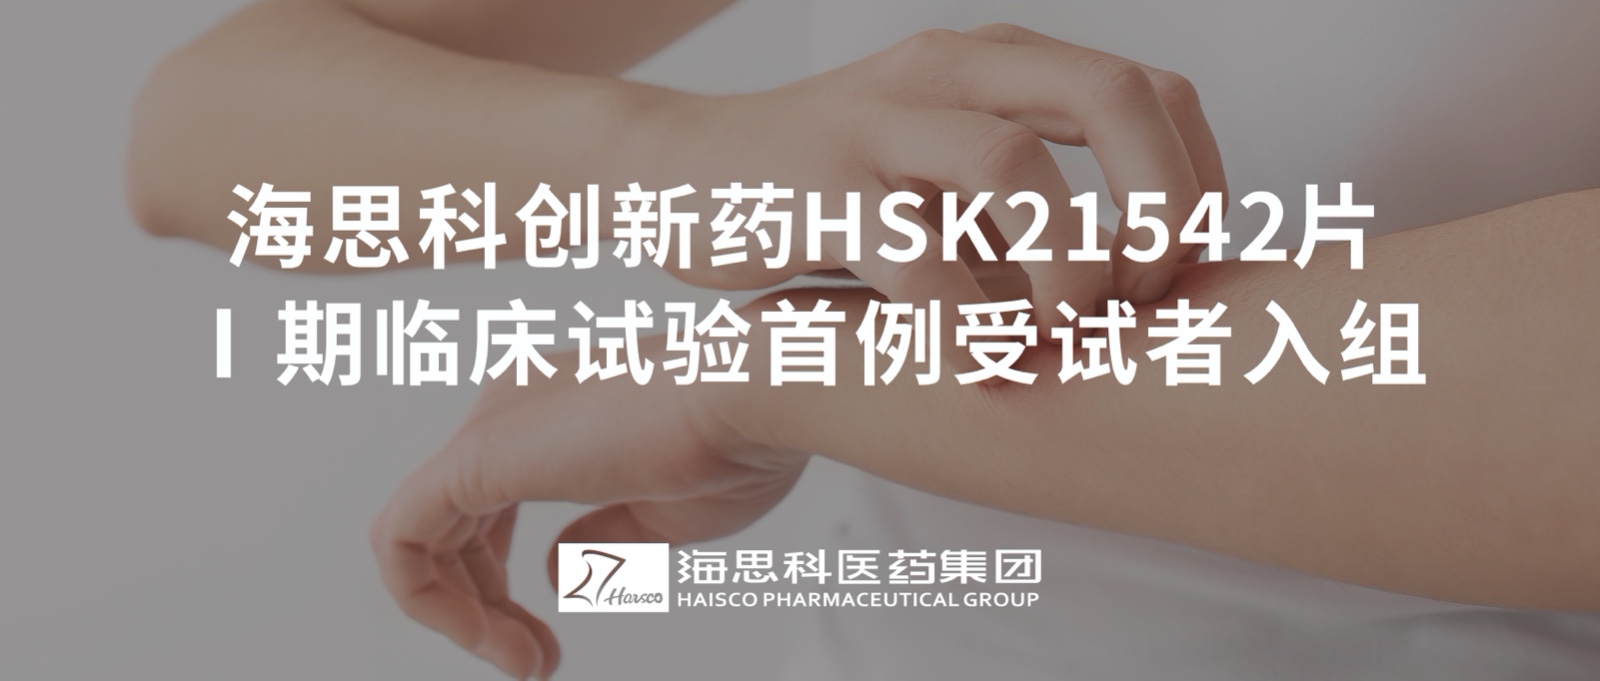 云顶国际官网创新药HSK21542片Ⅰ期临床试验首例受试者入组